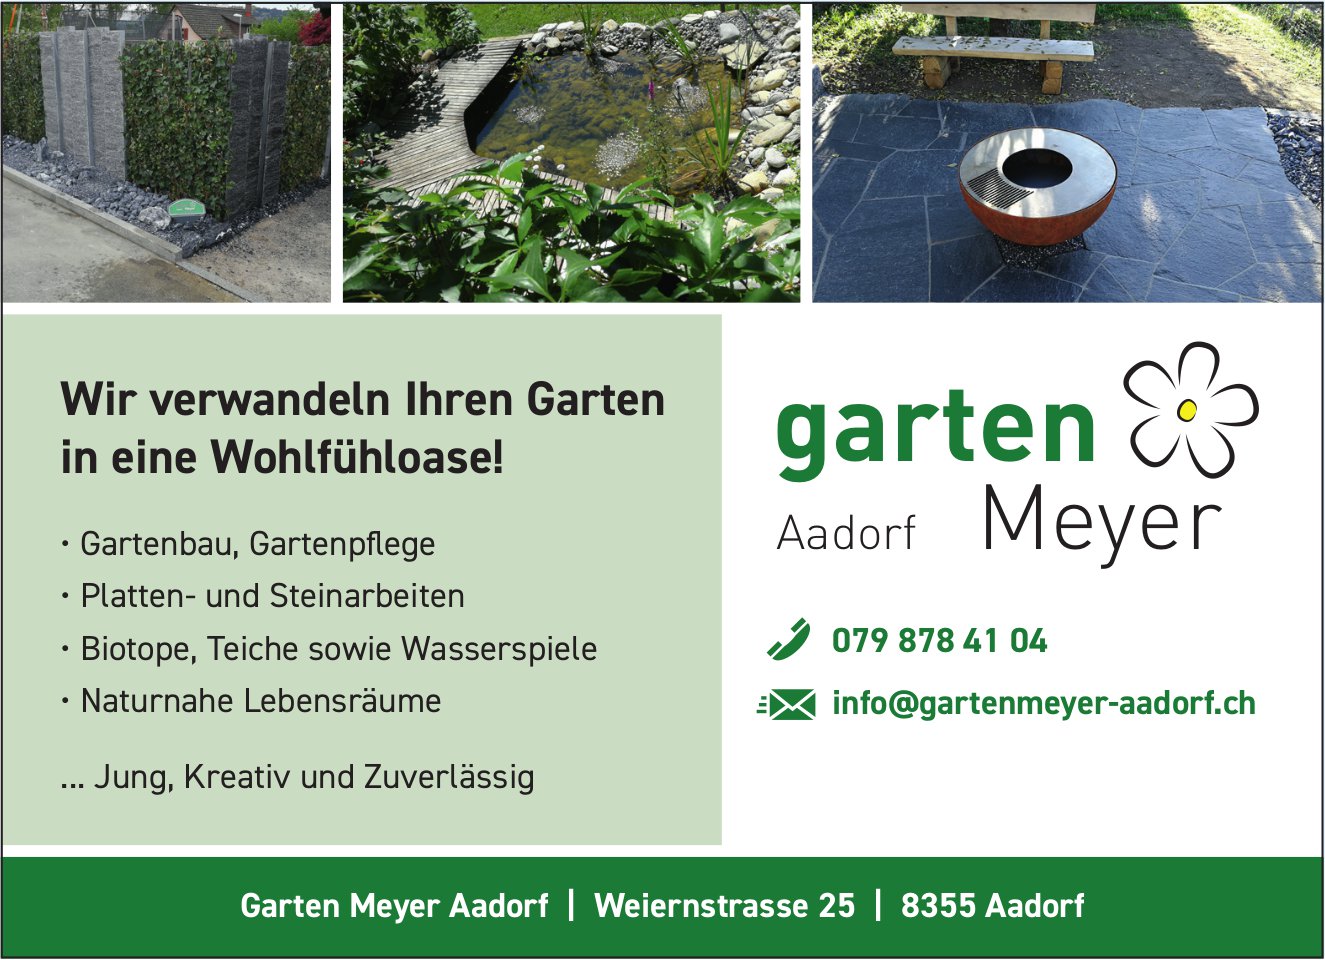 Garten Meyer, Aadorf - Wir verwandeln Ihren Garten in eine Wohlfühloase!